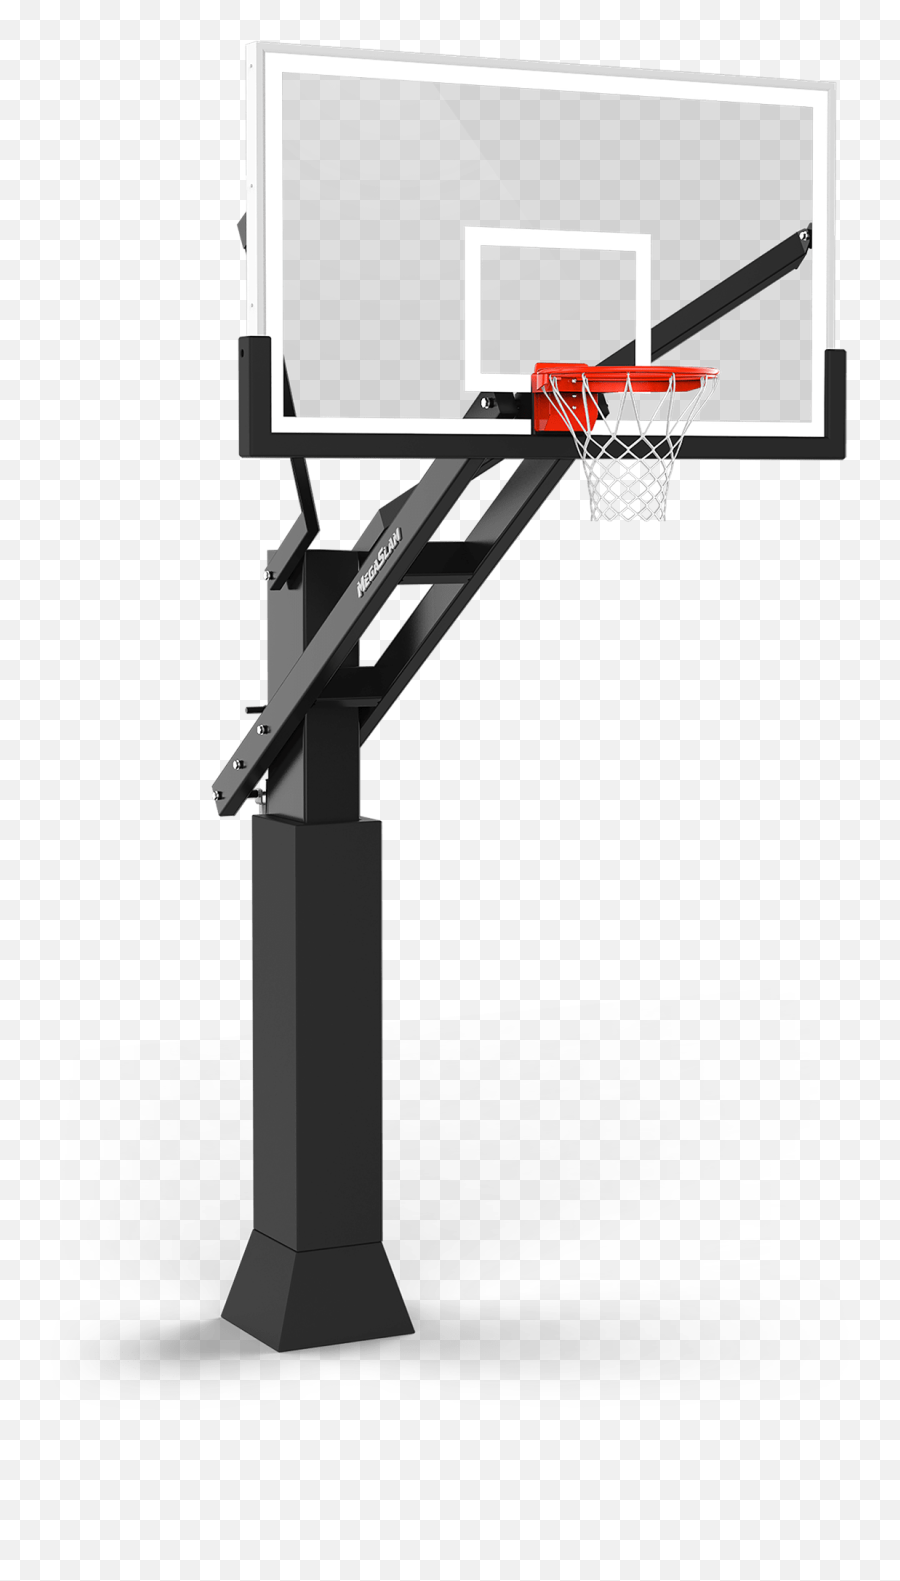 Download Megaslam Xl Outdoor Basketball - Outdoor Basketball Net Png Emoji,Basketball Hoop Png